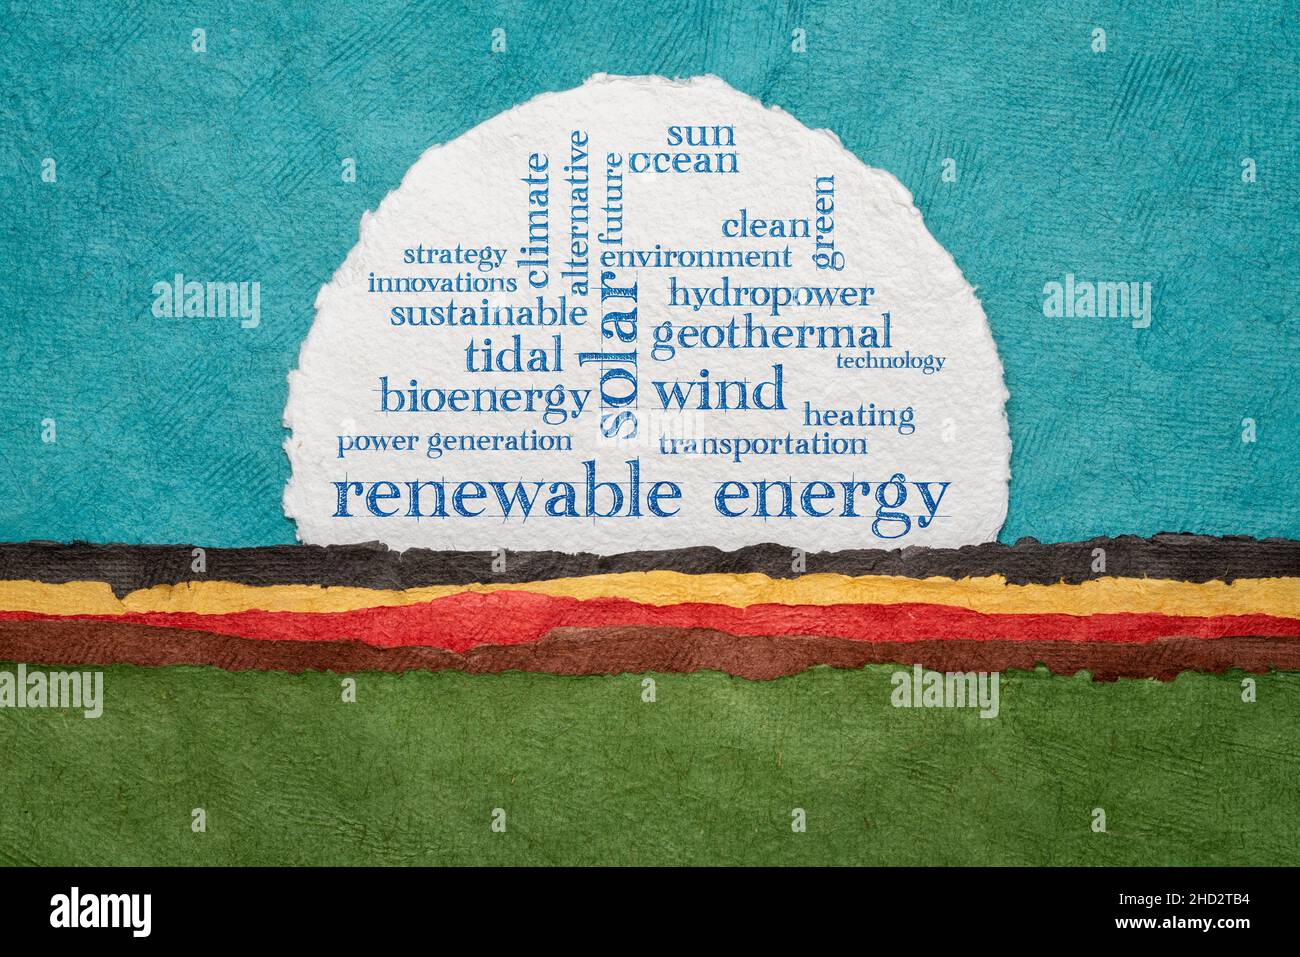 energia rinnovabile parola nuvola su una carta circolare acquerello contro colorato paesaggio astratto Foto Stock